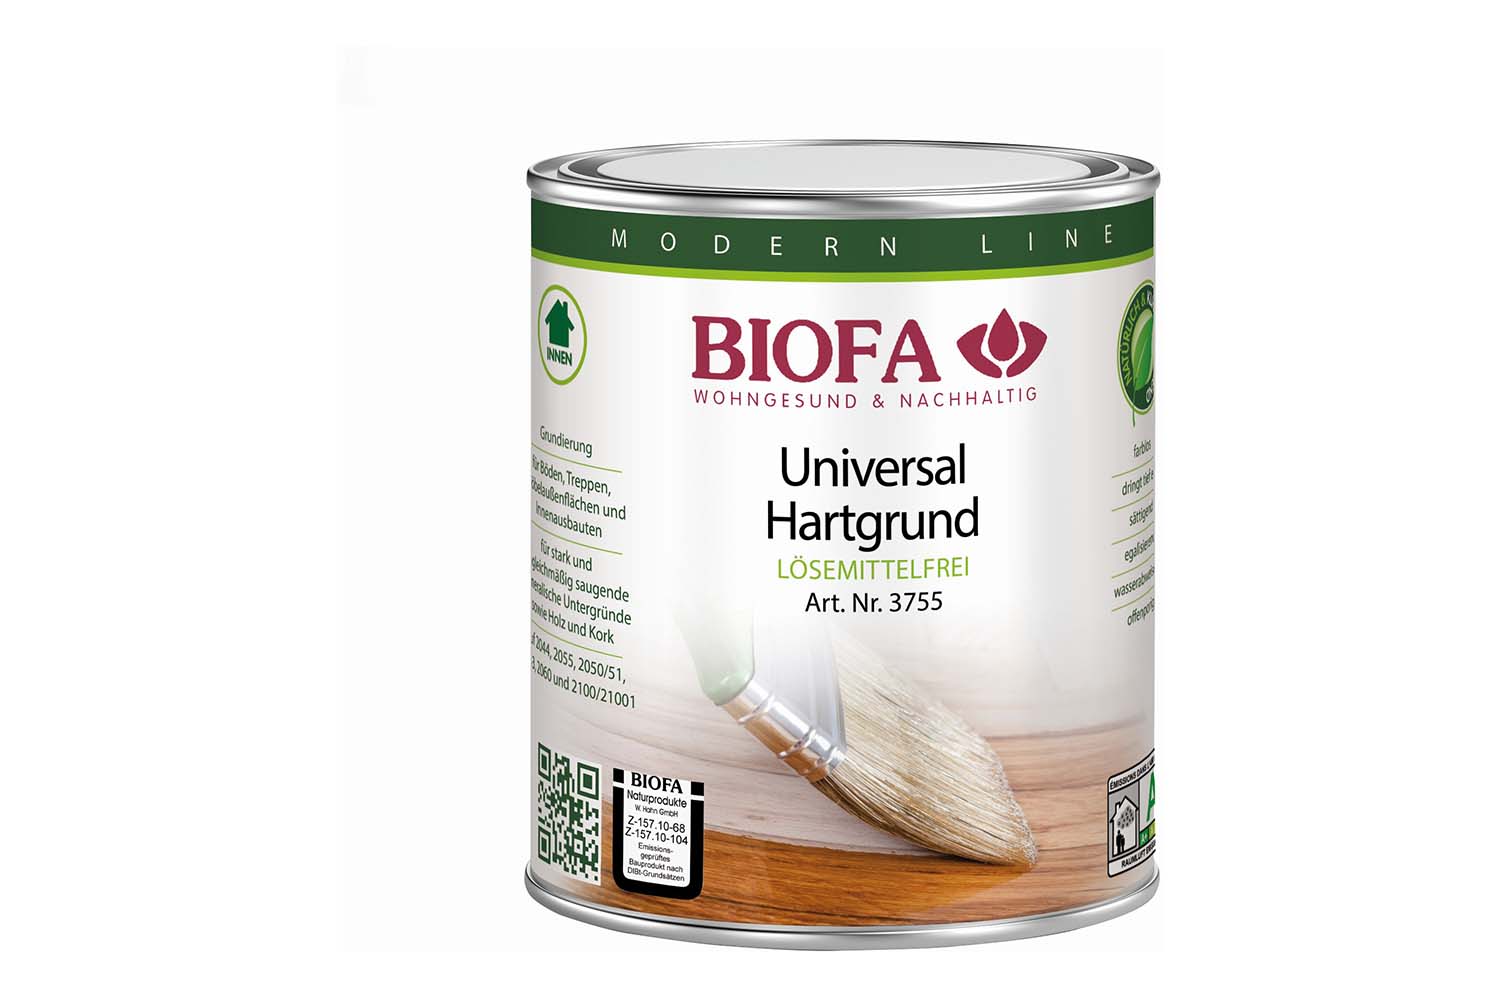 Biofa Universal Hartgrund lösemittelfrei